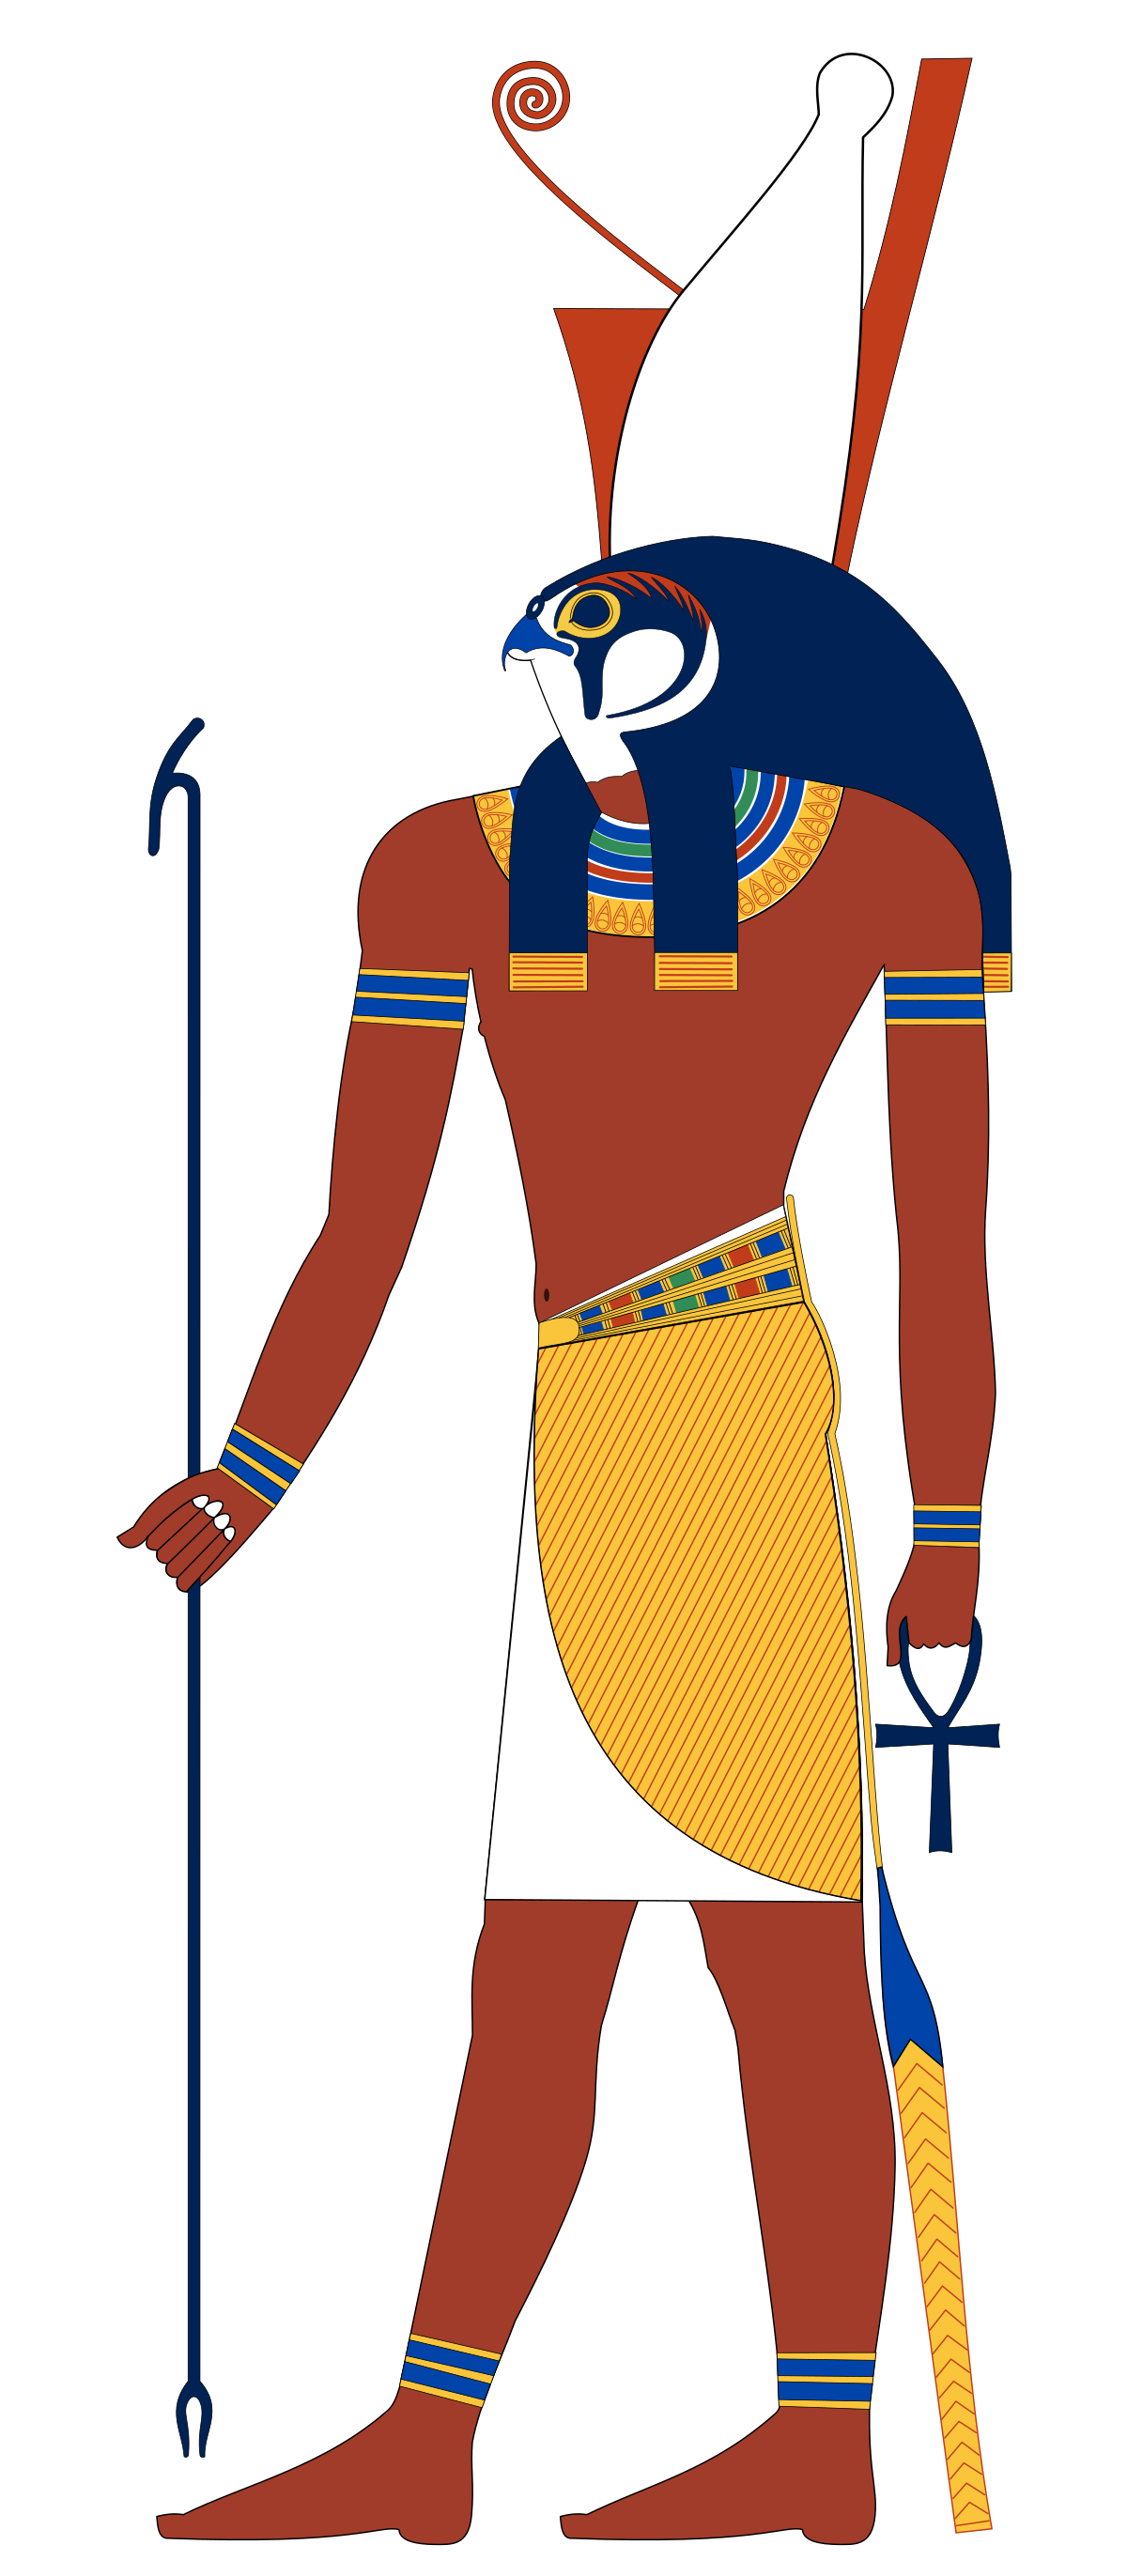 Vị thần Ai Cập là biểu tượng của văn hóa và tôn giáo cổ đại, với nhiều câu chuyện và bí mật thu hút sự quan tâm của con người suốt hàng nghìn năm. Hãy khám phá những đền đài và tượng thần Ai Cập qua bức ảnh đẹp.